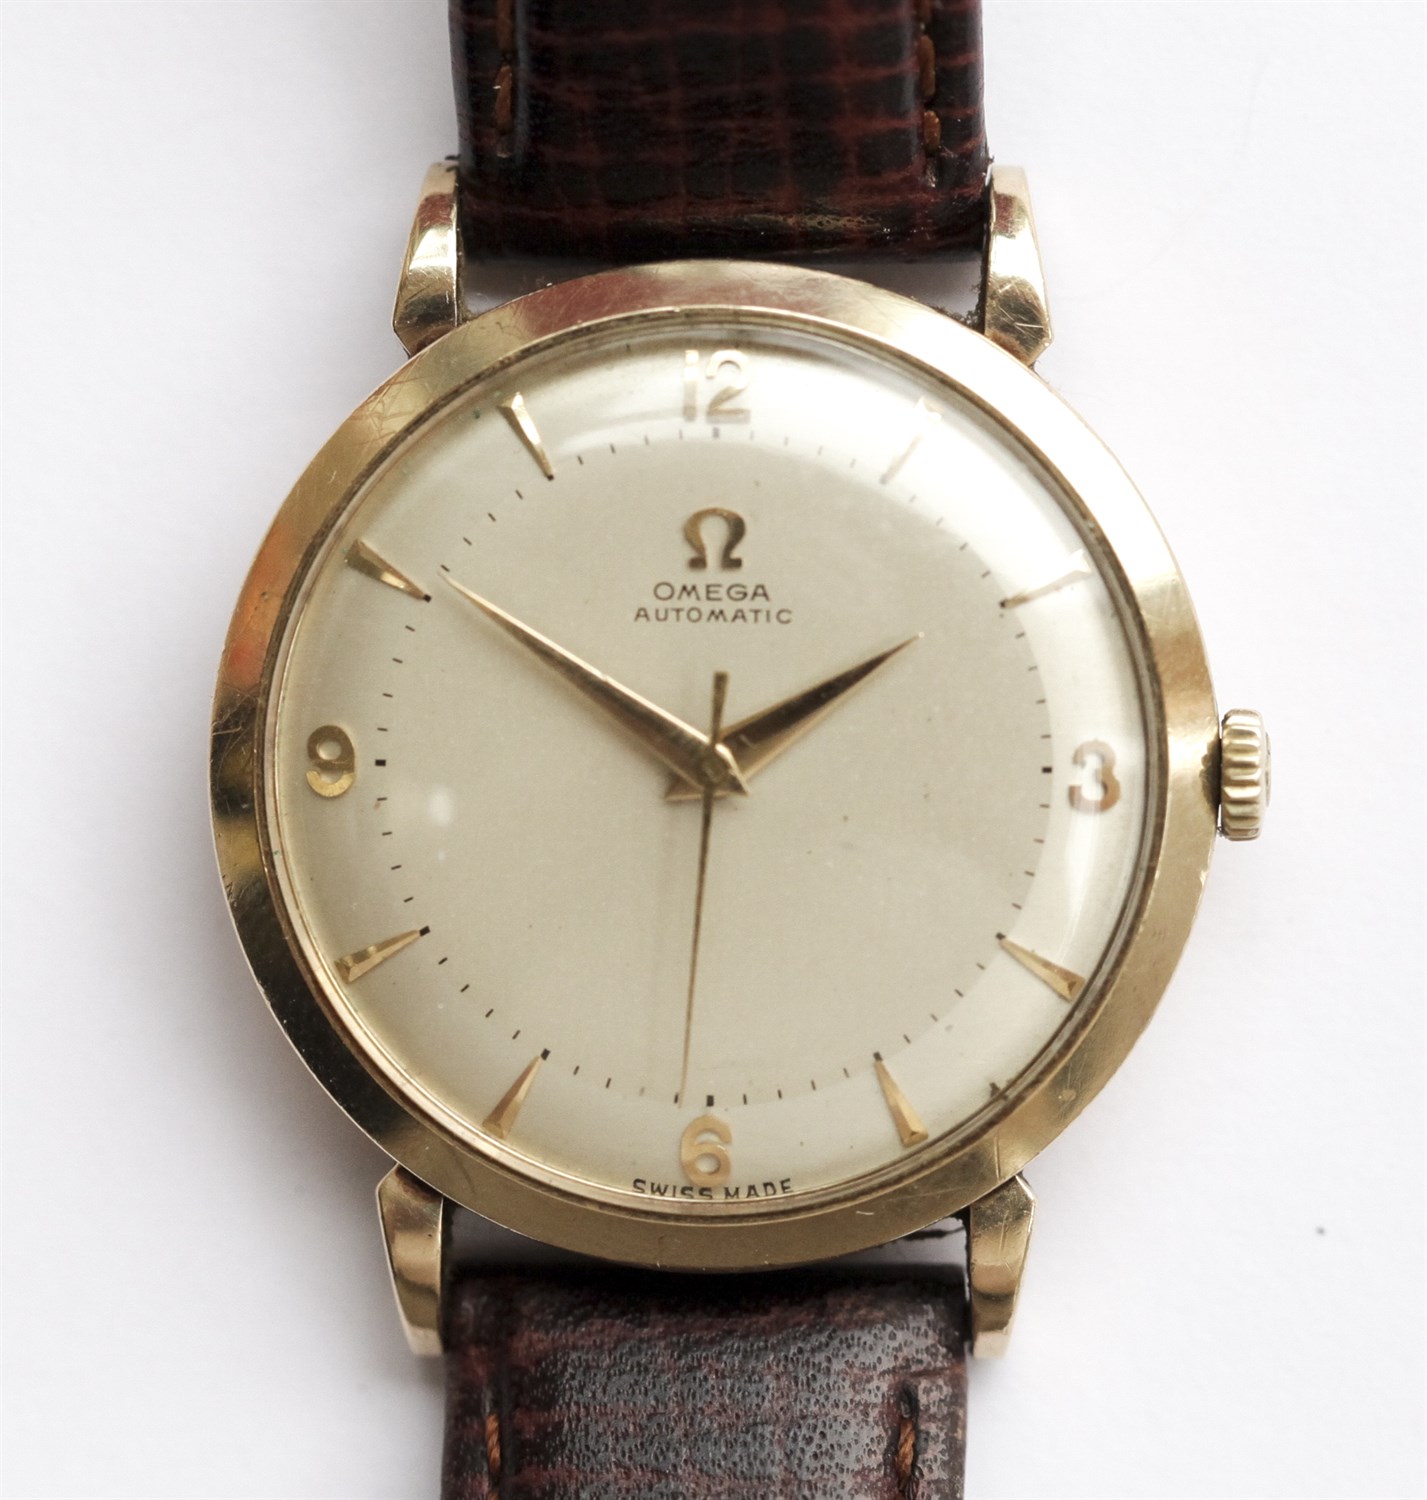 Lot 124 - OMEGA - A gentleman's wrist watch